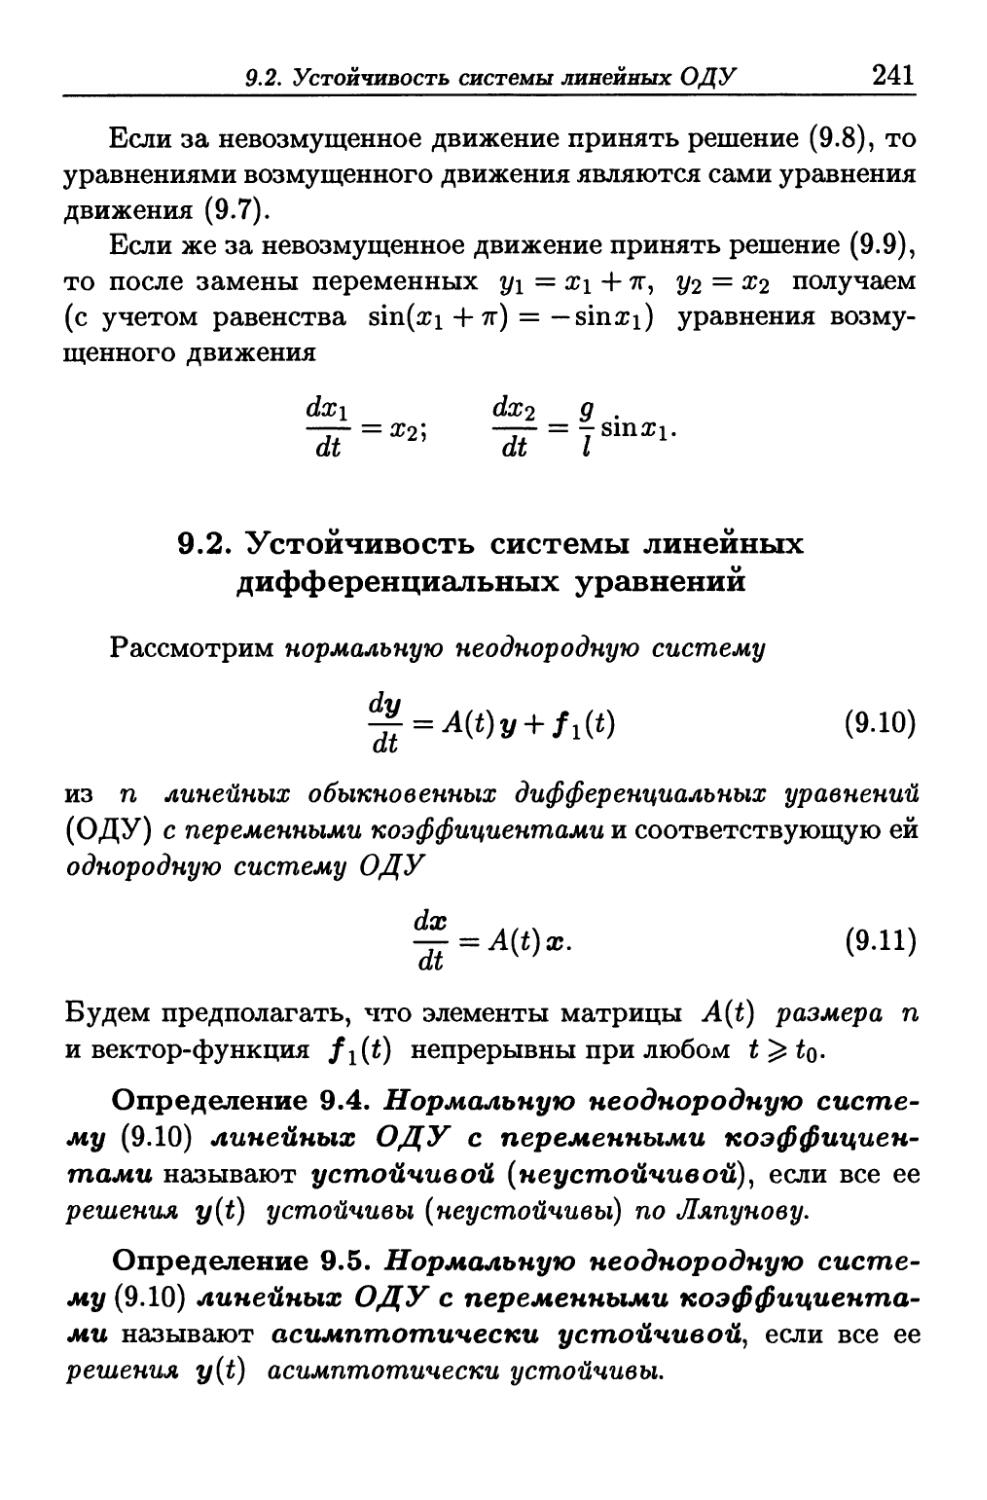 9.2. Устойчивость системы линейных дифференциальных уравнений